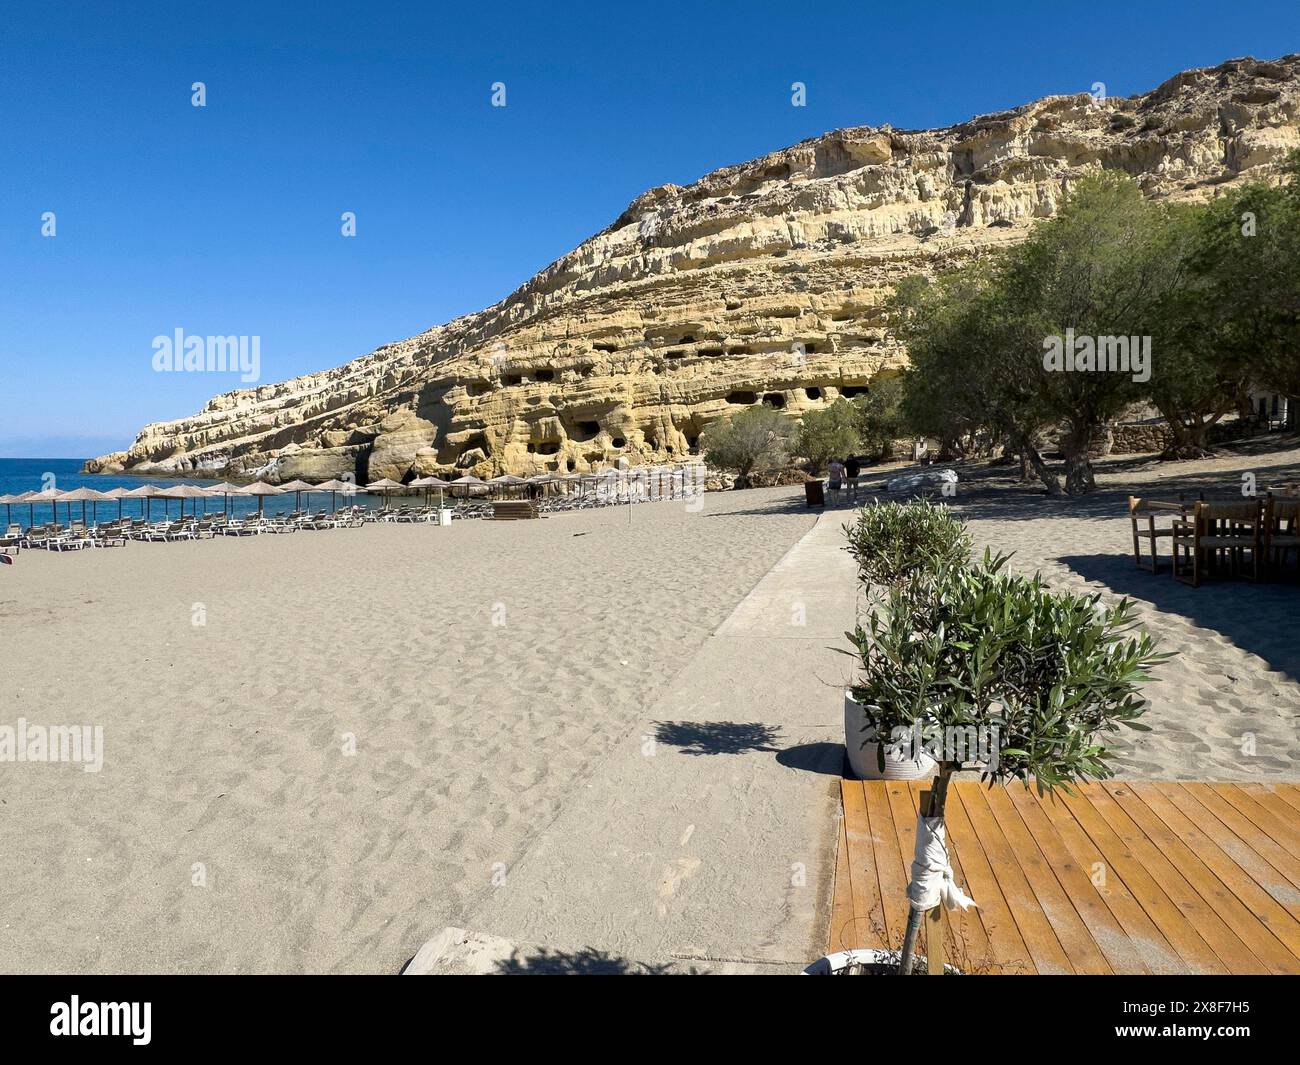 Vista della spiaggia di Matala, sullo sfondo rocce di arenaria con ex necropoli romana con grotte di arenaria scolpite in arenaria grotta tombe Grotte Foto Stock